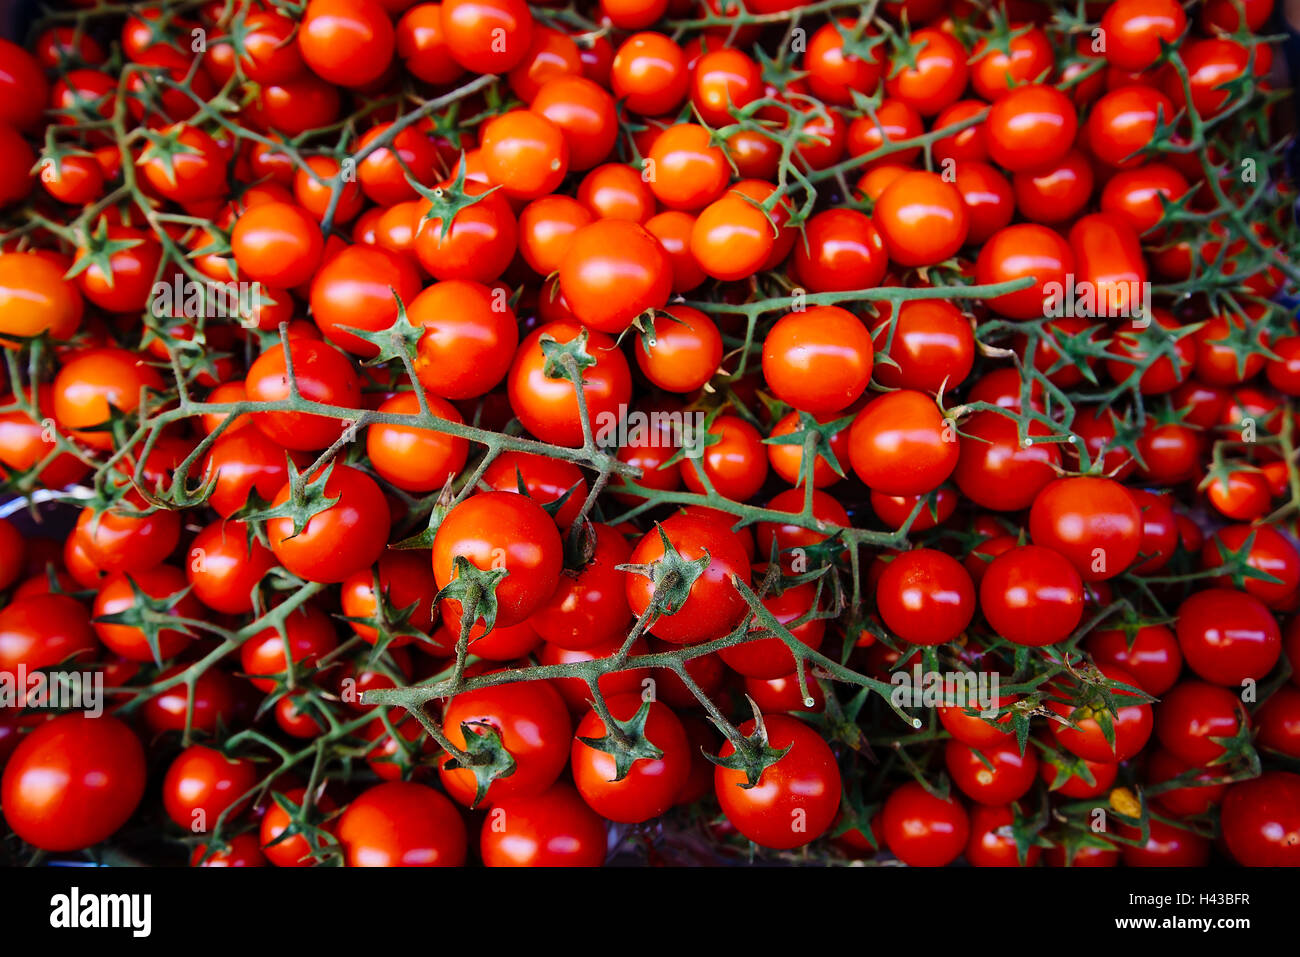 Tomatoes on vines Stock Photo